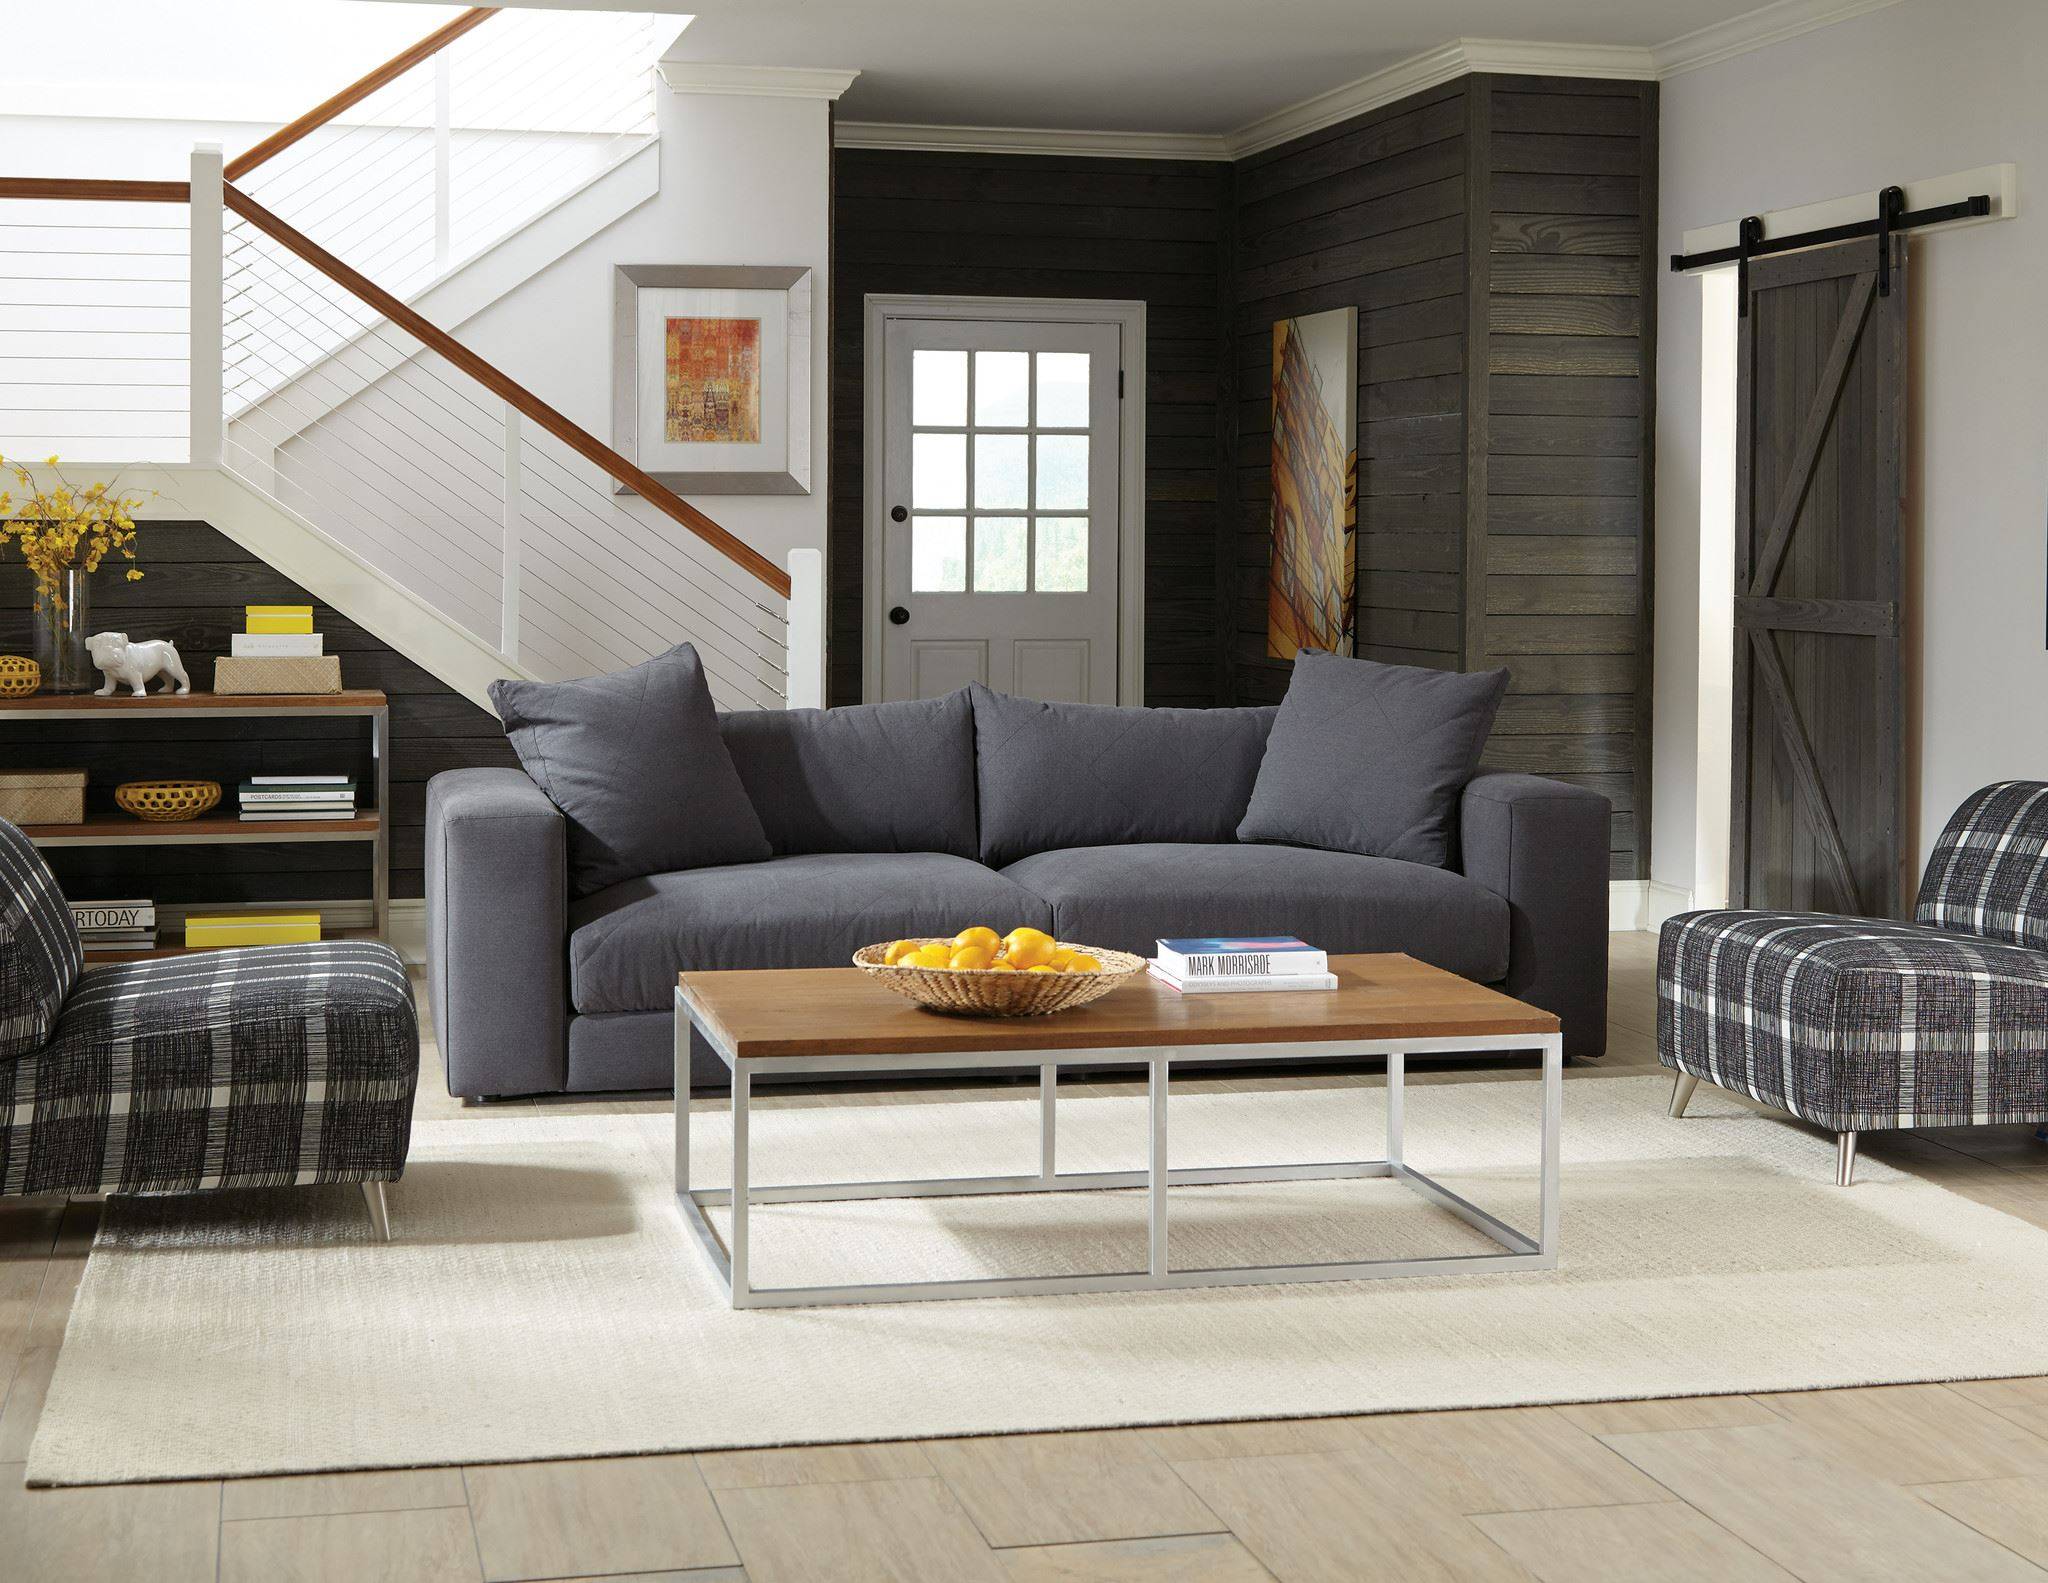 Как правильно выбрать хороший и качественный диван